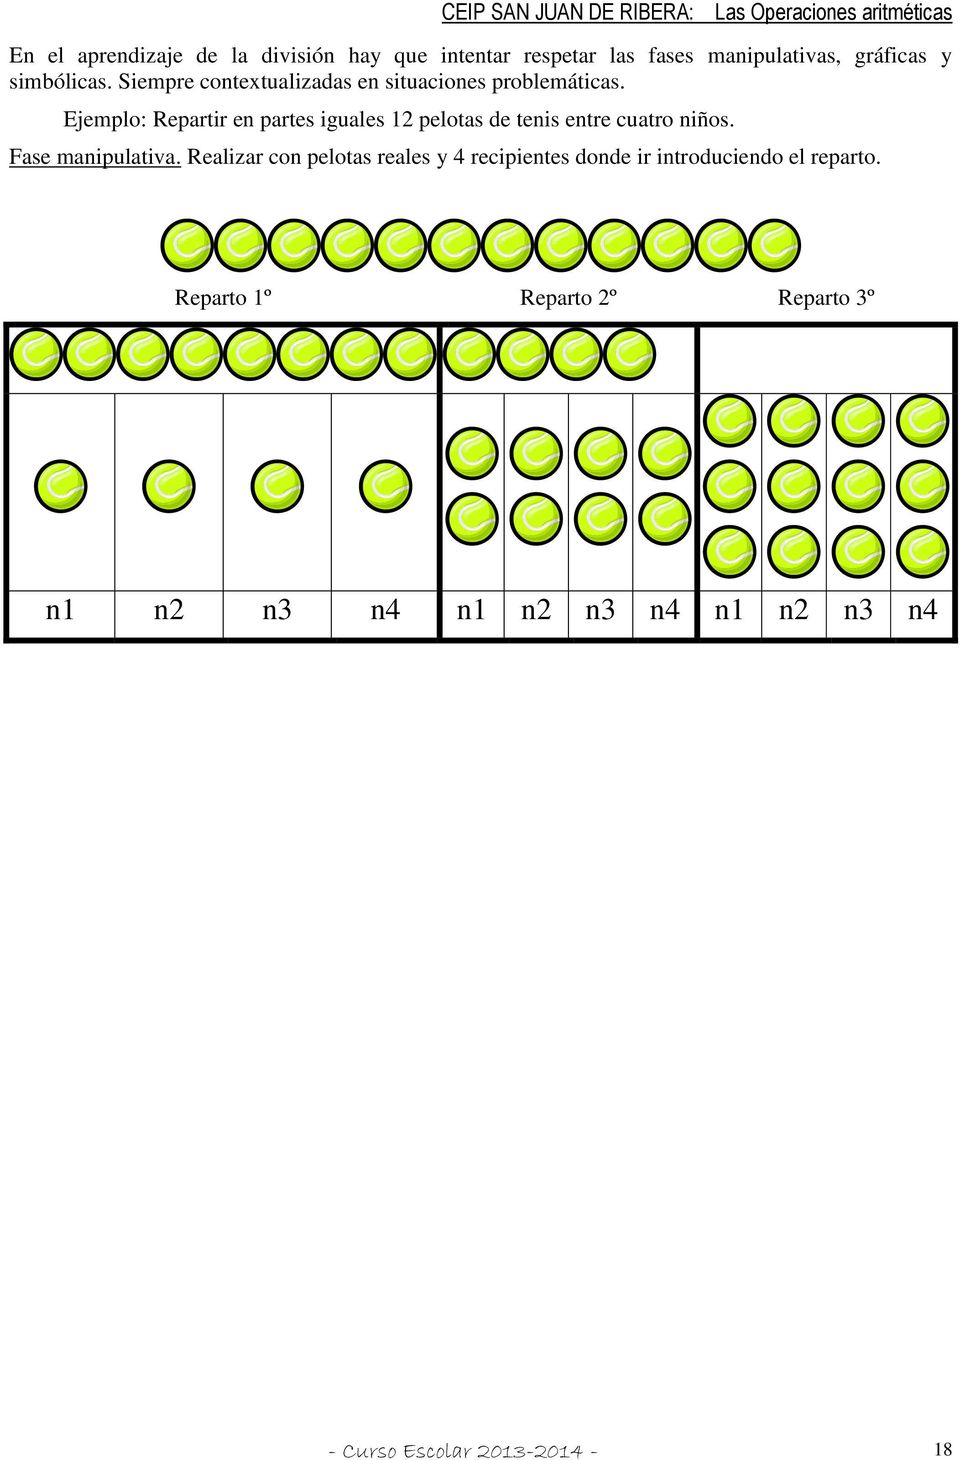 Ejemplo: Repartir en partes iguales 12 pelotas de tenis entre cuatro niños. Fase manipulativa.